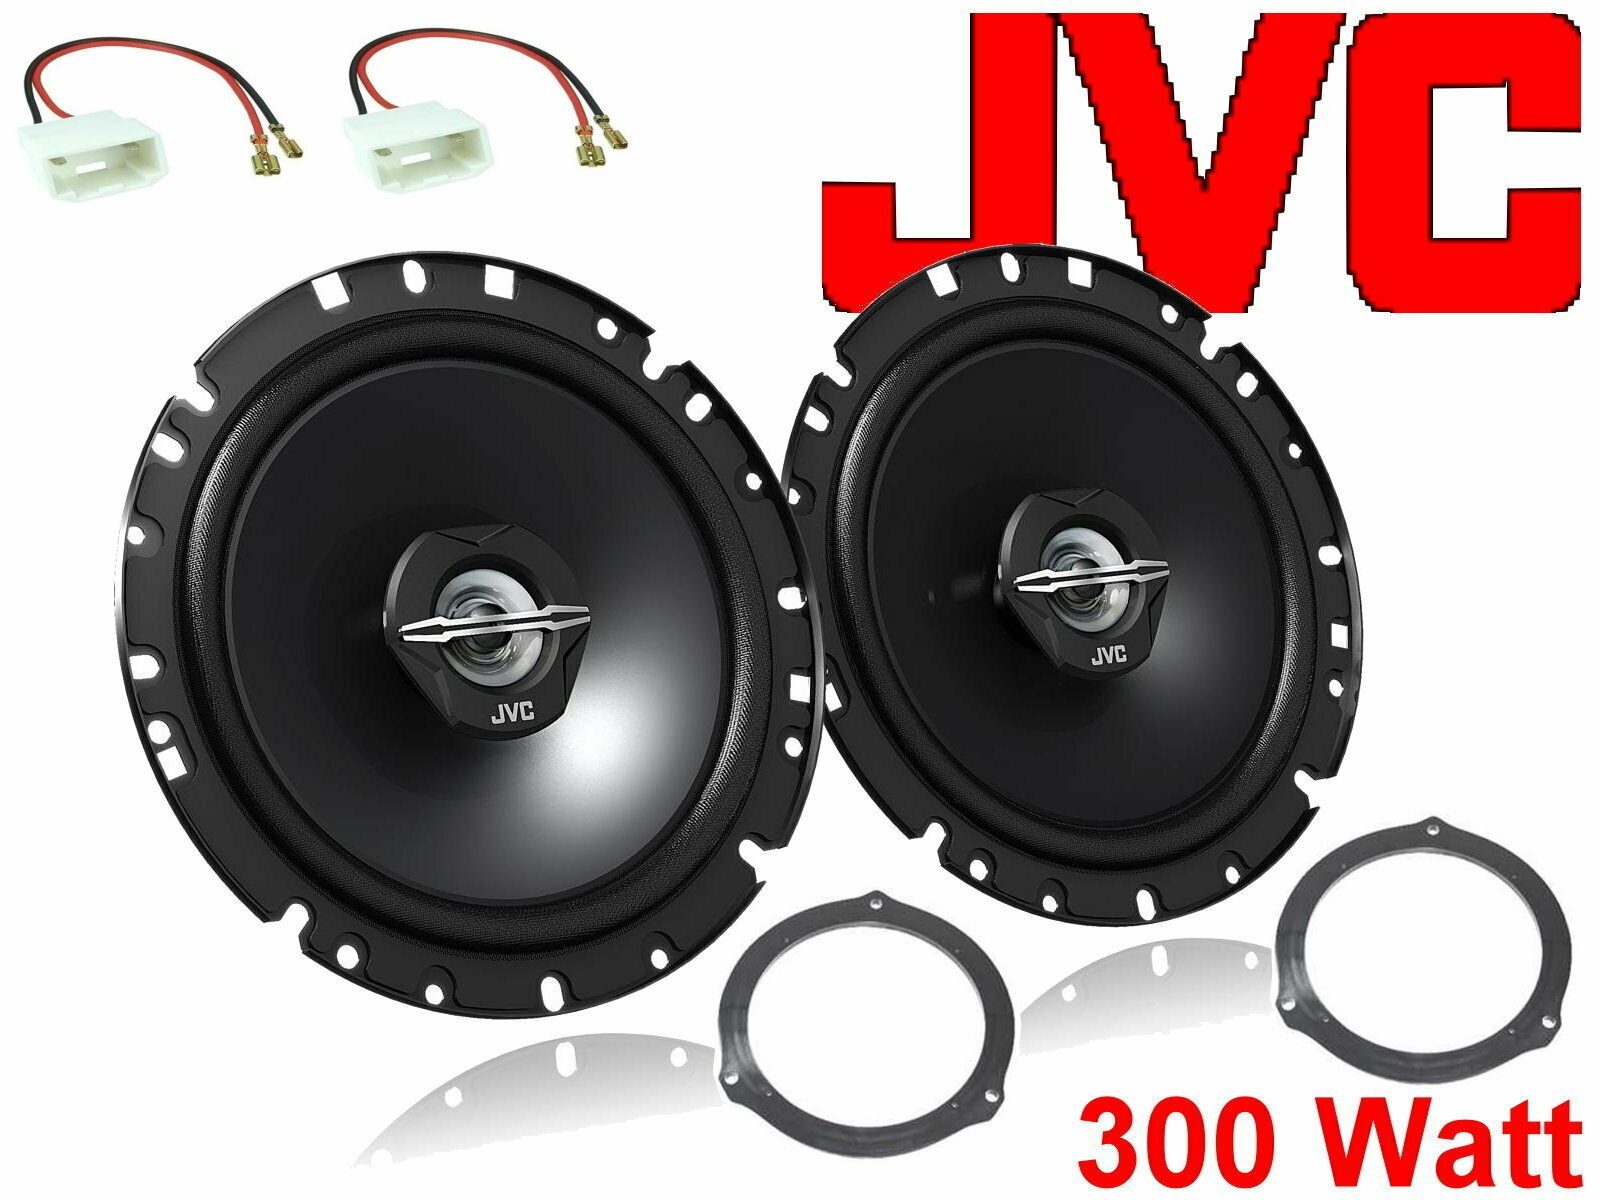 DSX JVC passend für Ford 11/04-11/10 Bj Auto-Lautsprecher (30 Lautspr W) Focus